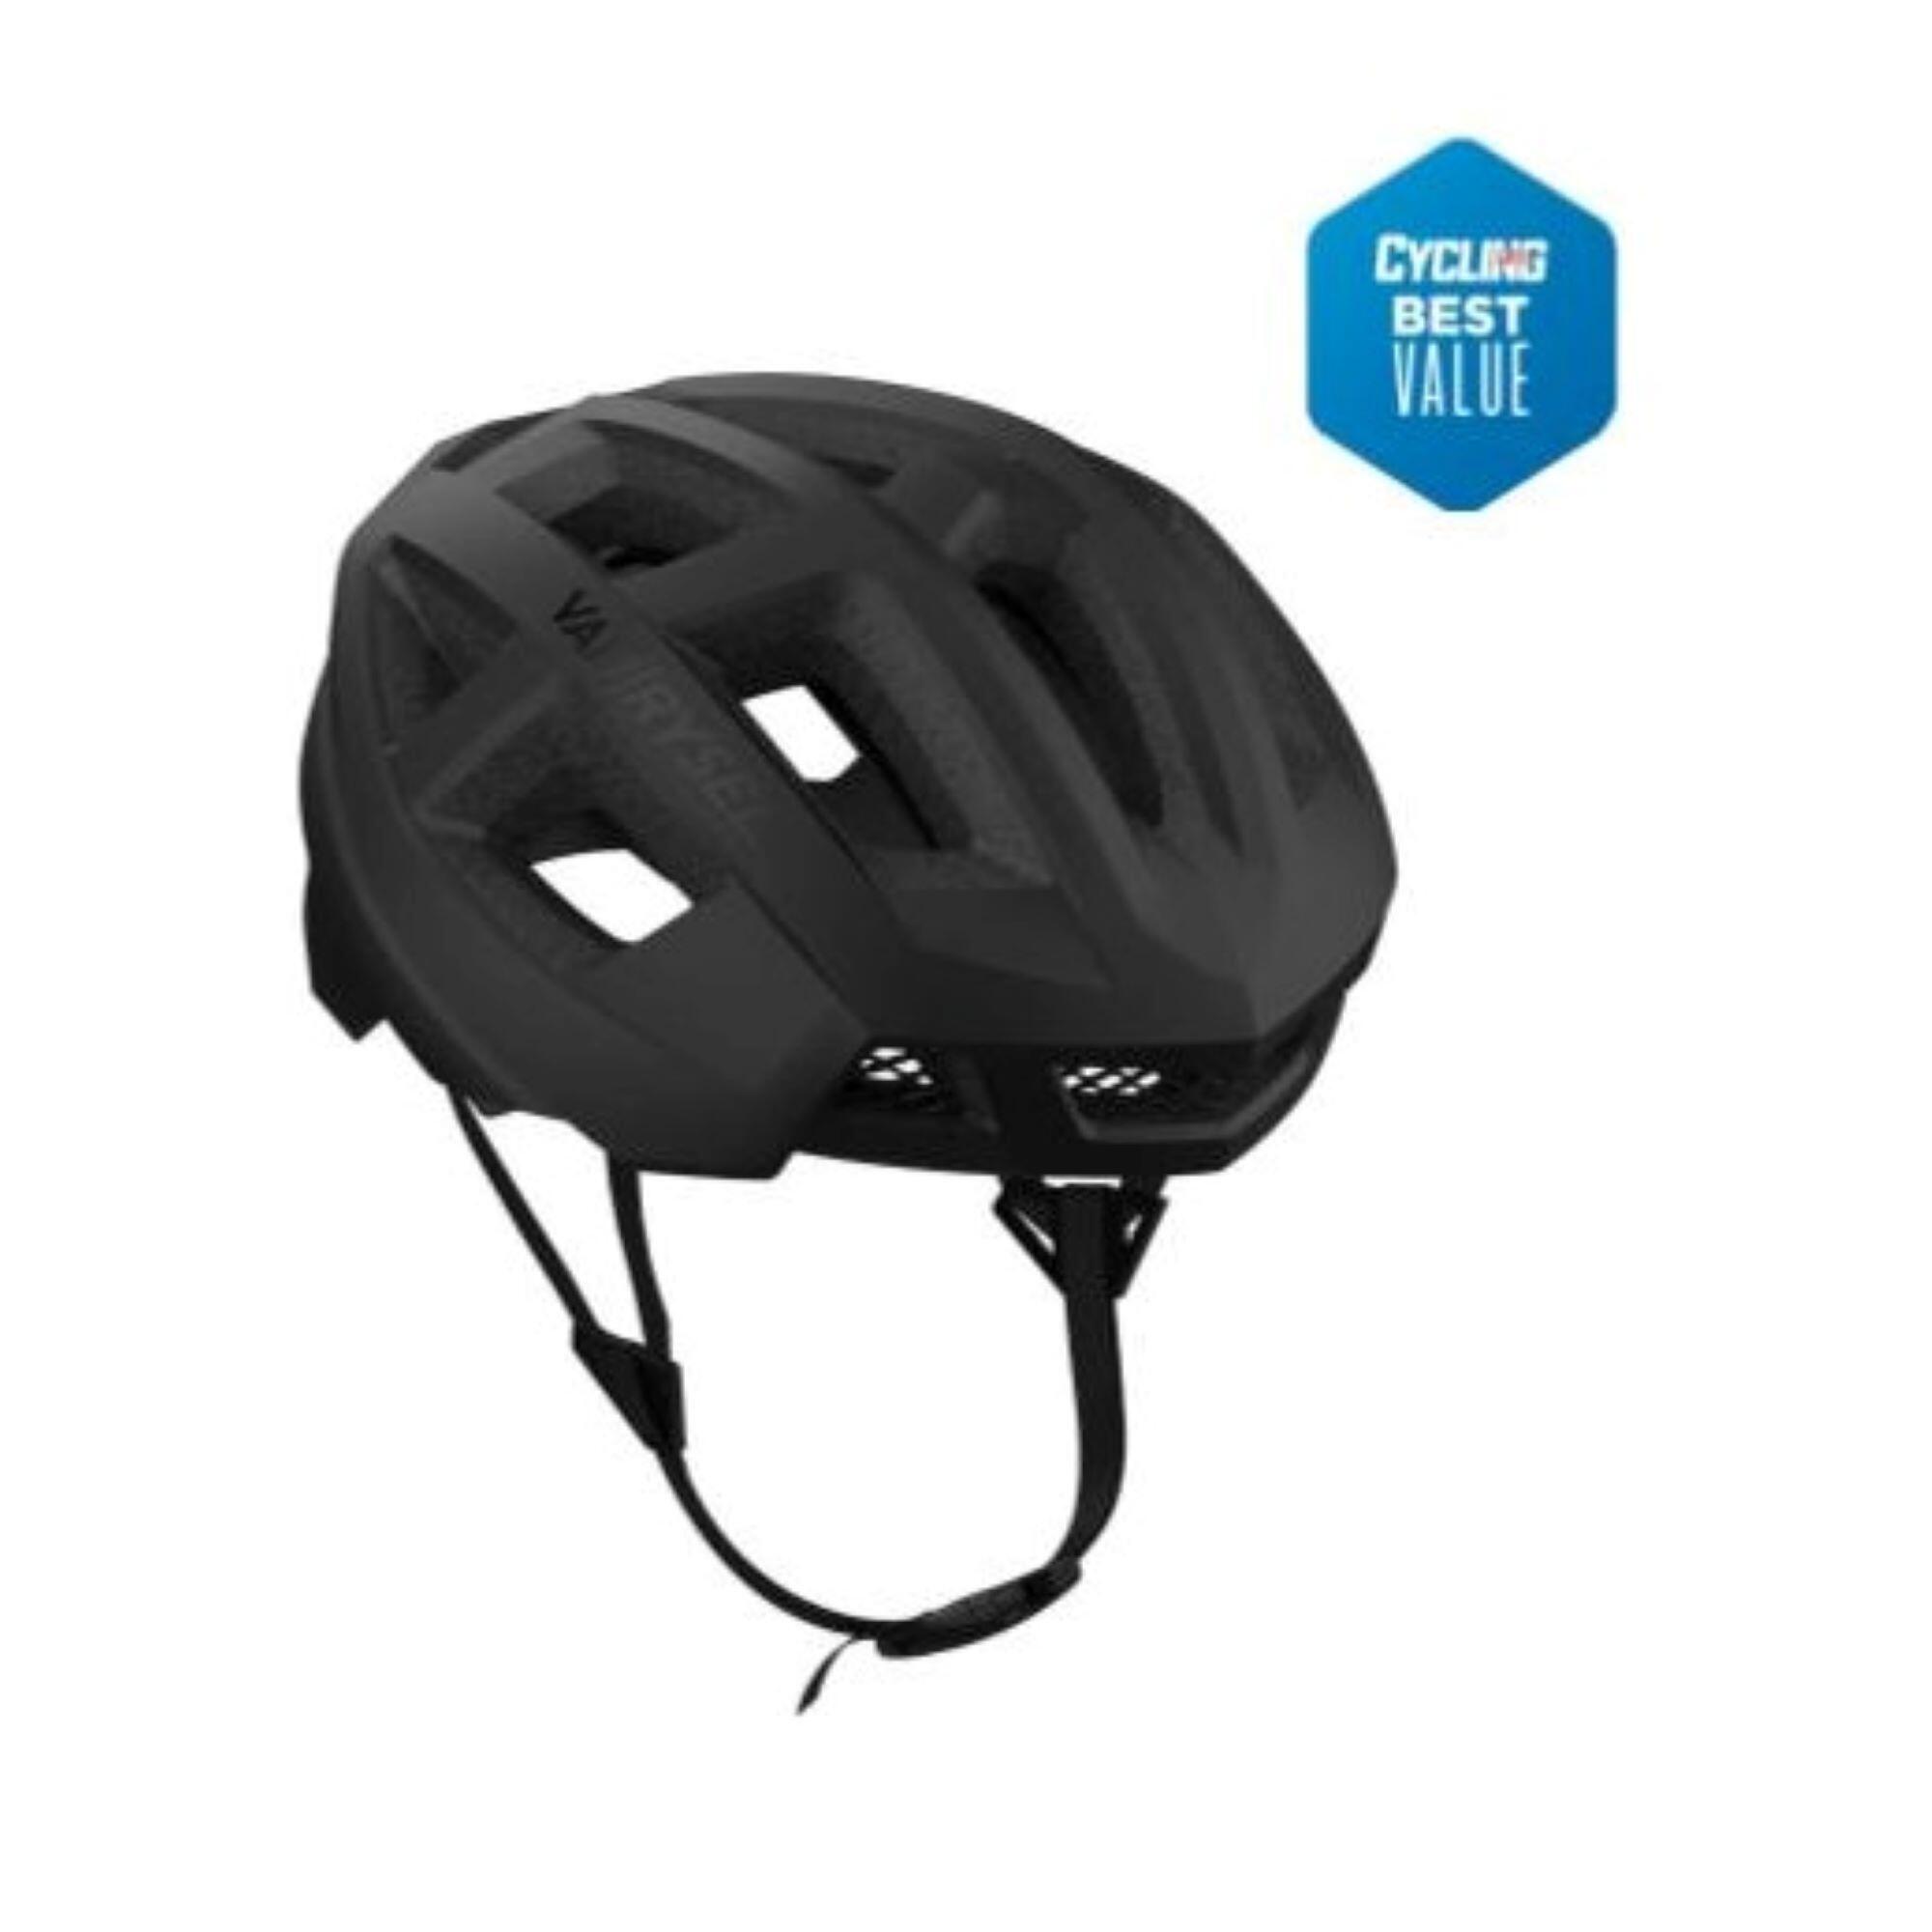 VAN RYSEL Racer Road Cycling Helmet - Black